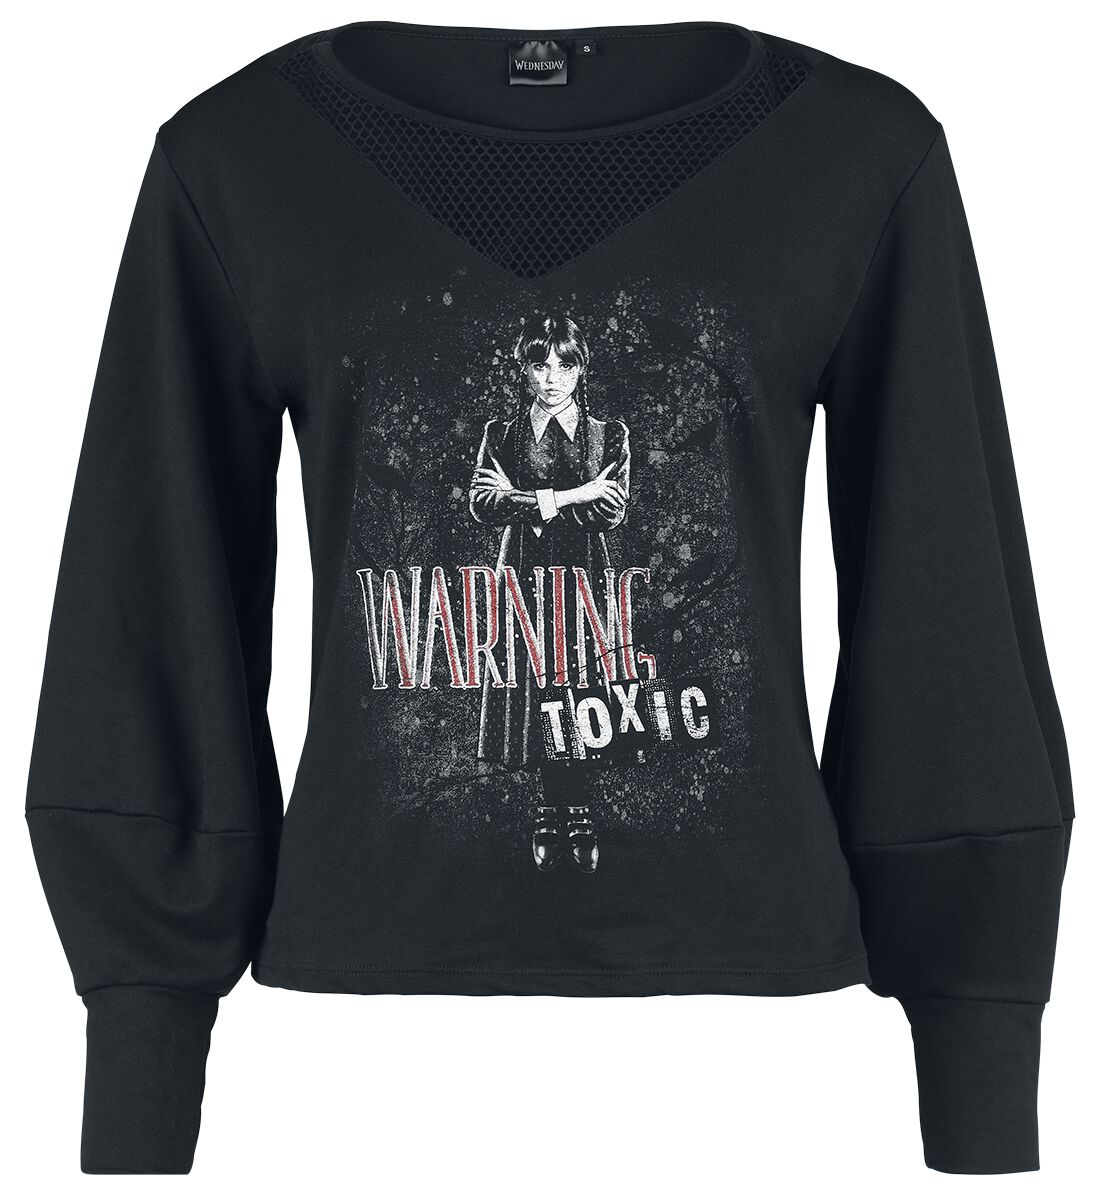 Wednesday Sweatshirt - Warning - Toxic - S bis XXL - für Damen - Größe L - schwarz  - EMP exklusives Merchandise!